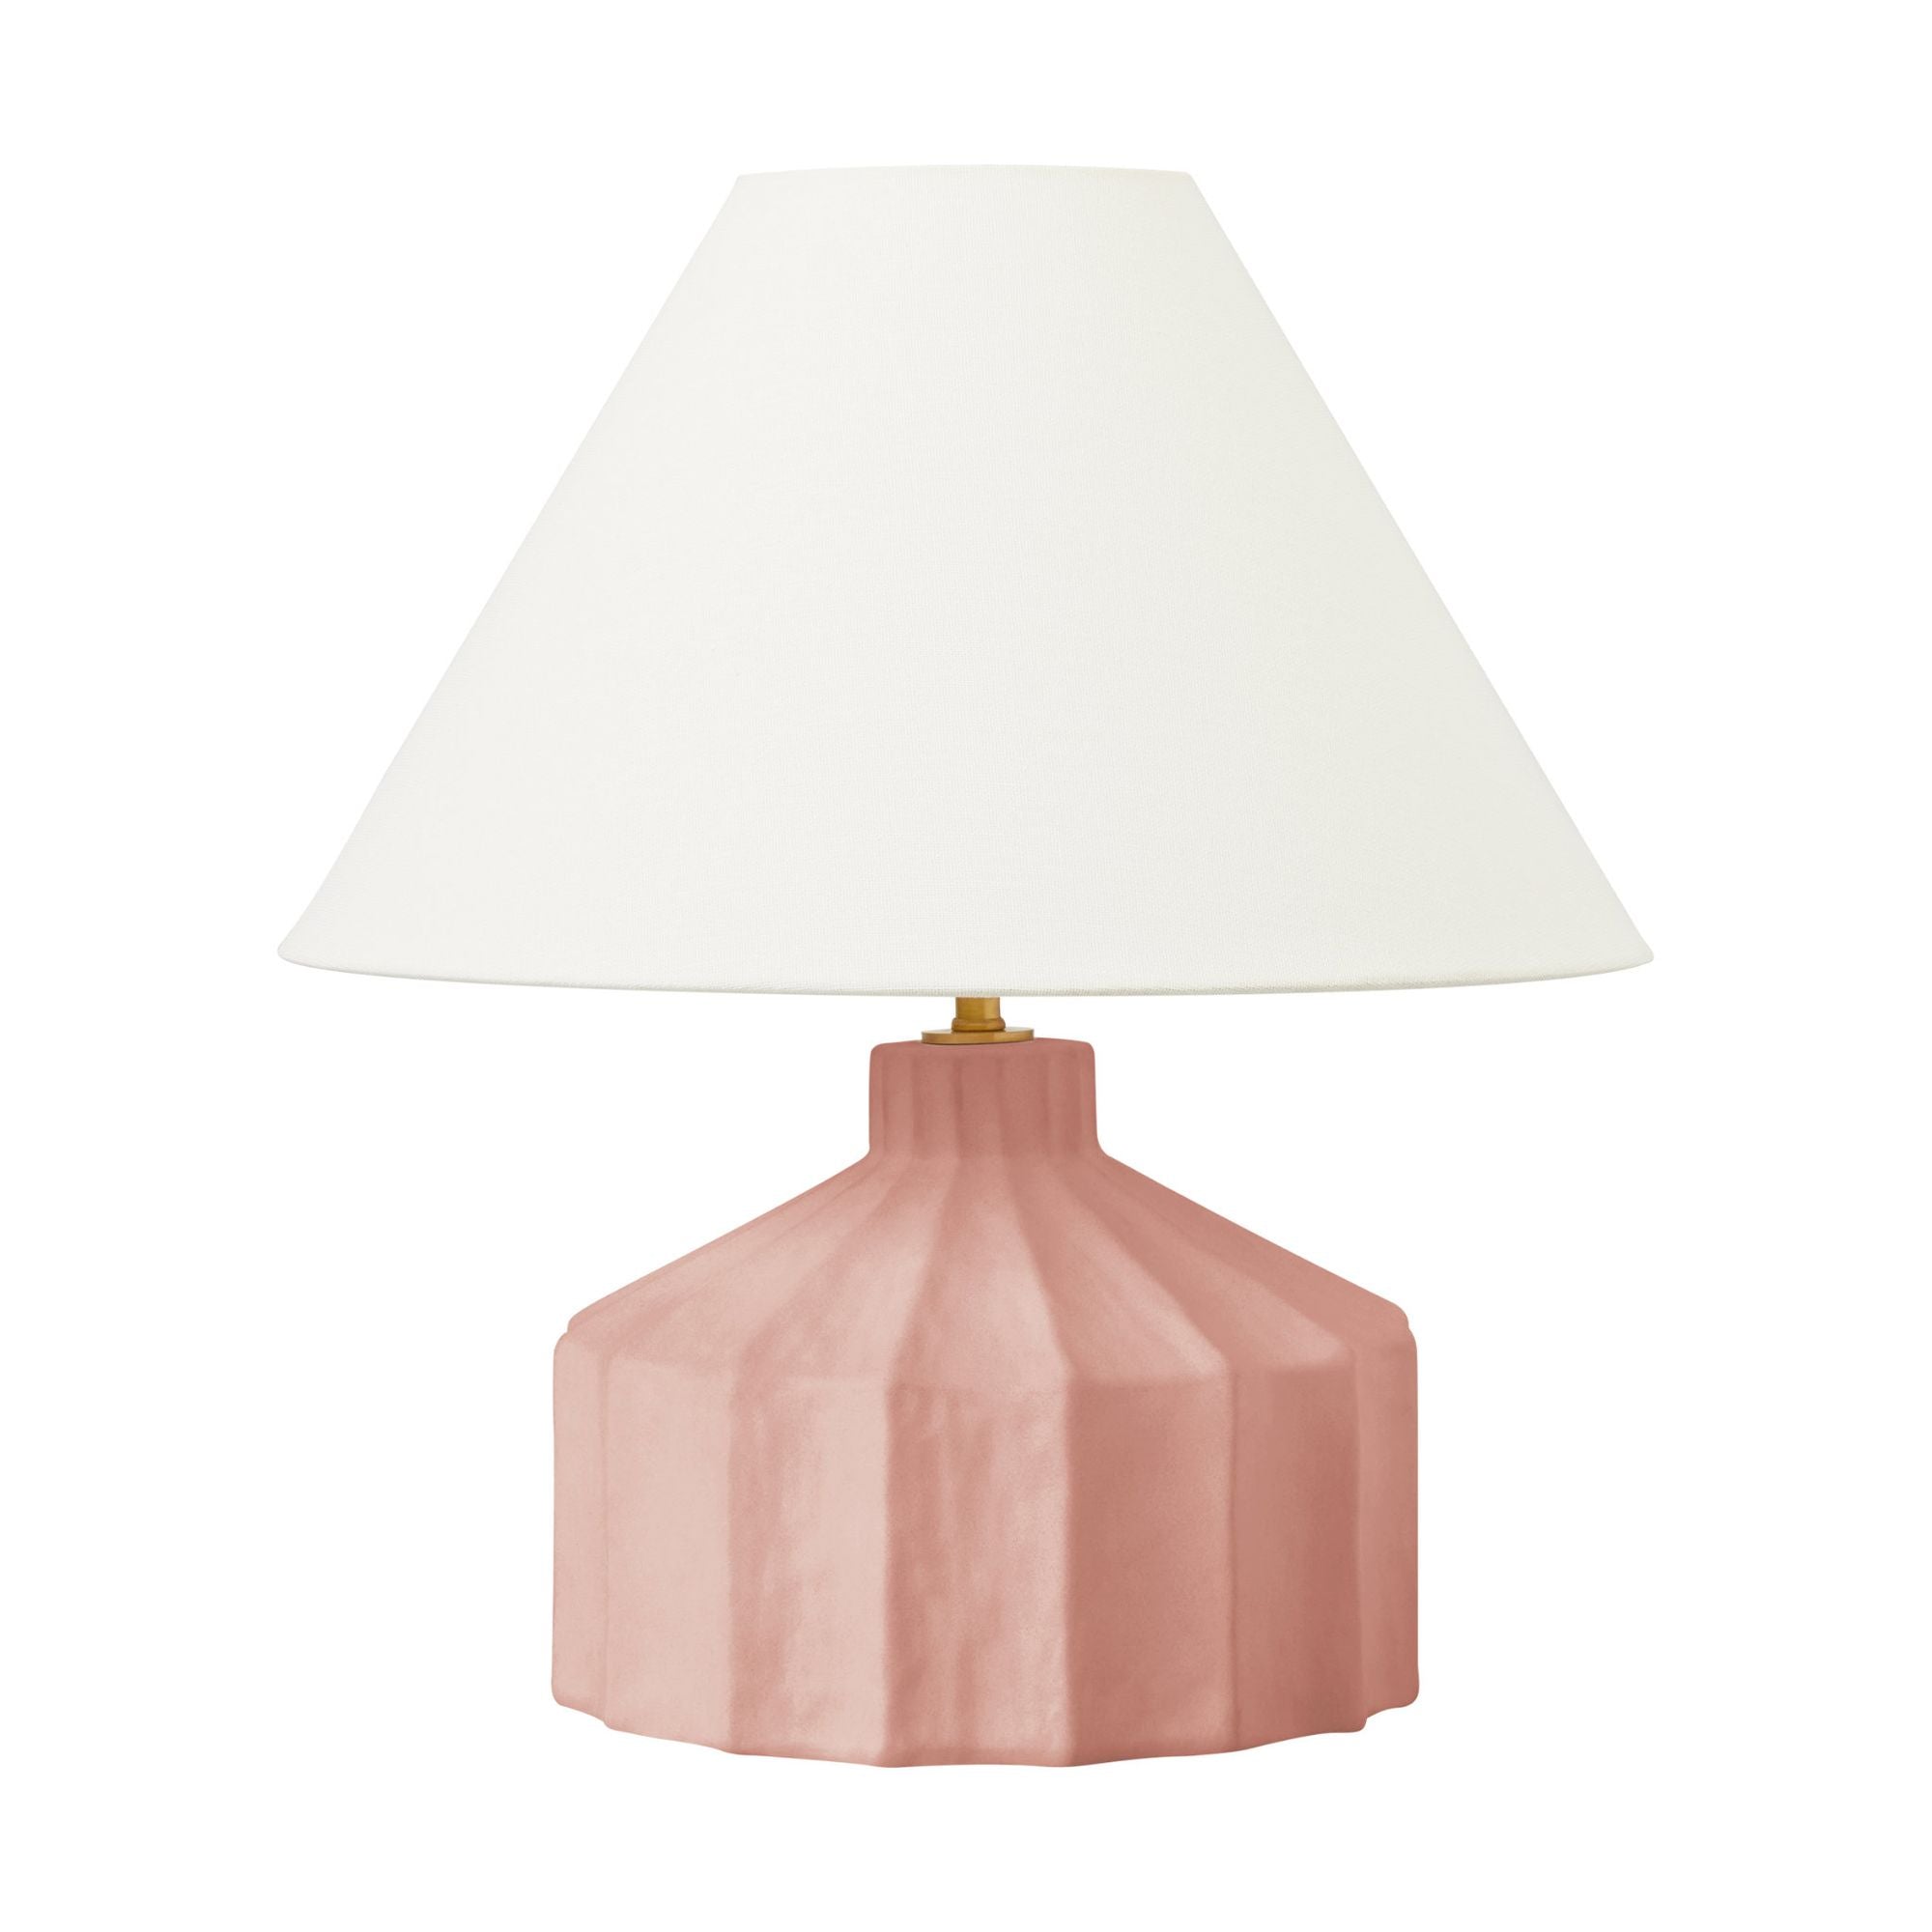 Kelly Wearstler Veneto Small Table Lamp in Dusty Rose